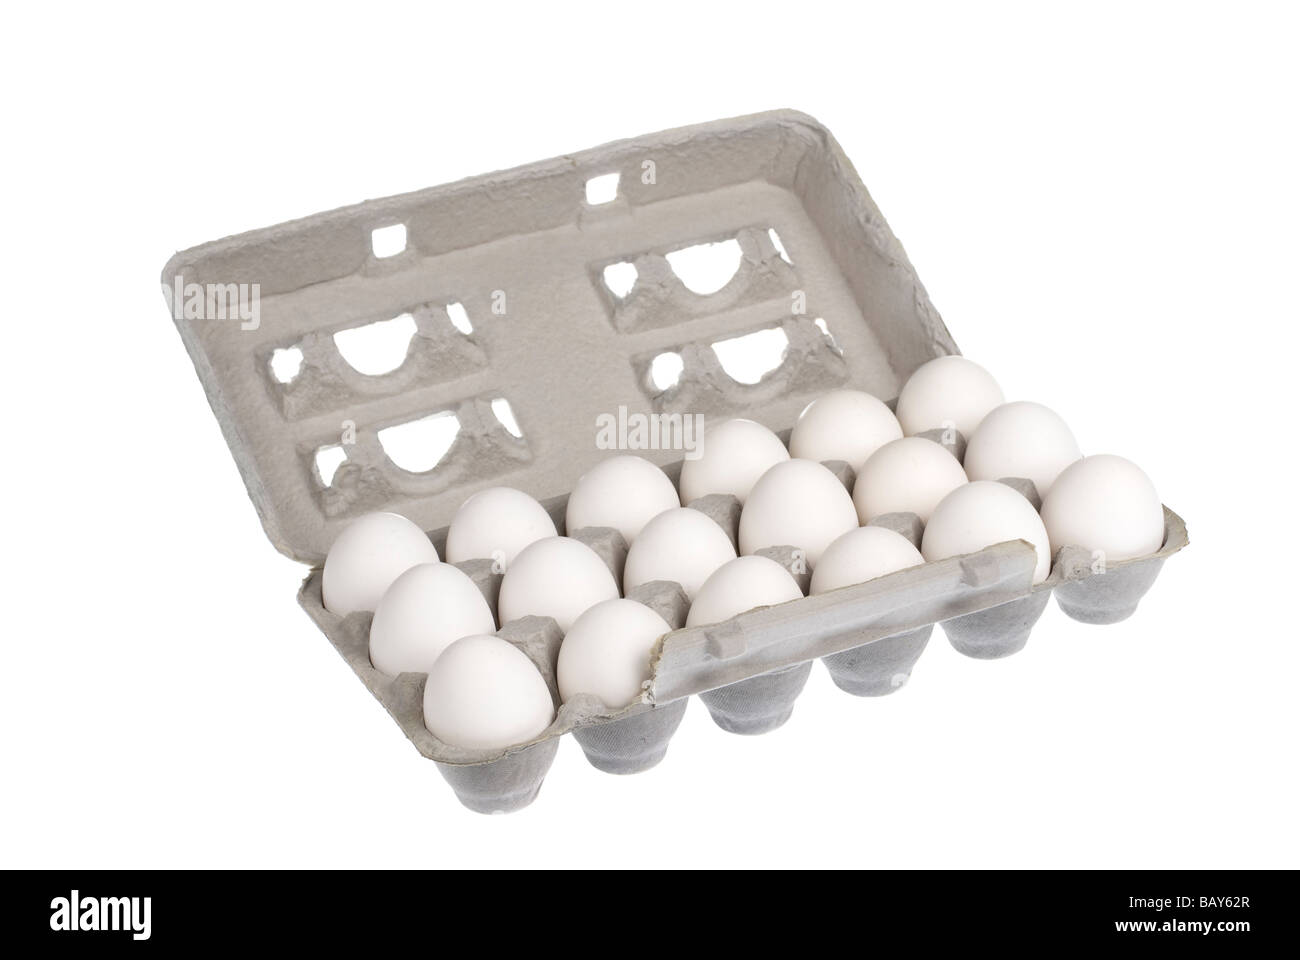 Ein 18 Eierkiste mit weißen Eiern isoliert auf einem weißen Hintergrund Bild wurde auf einem Leuchttisch gedreht und ist kein Ausschnitt Stockfoto